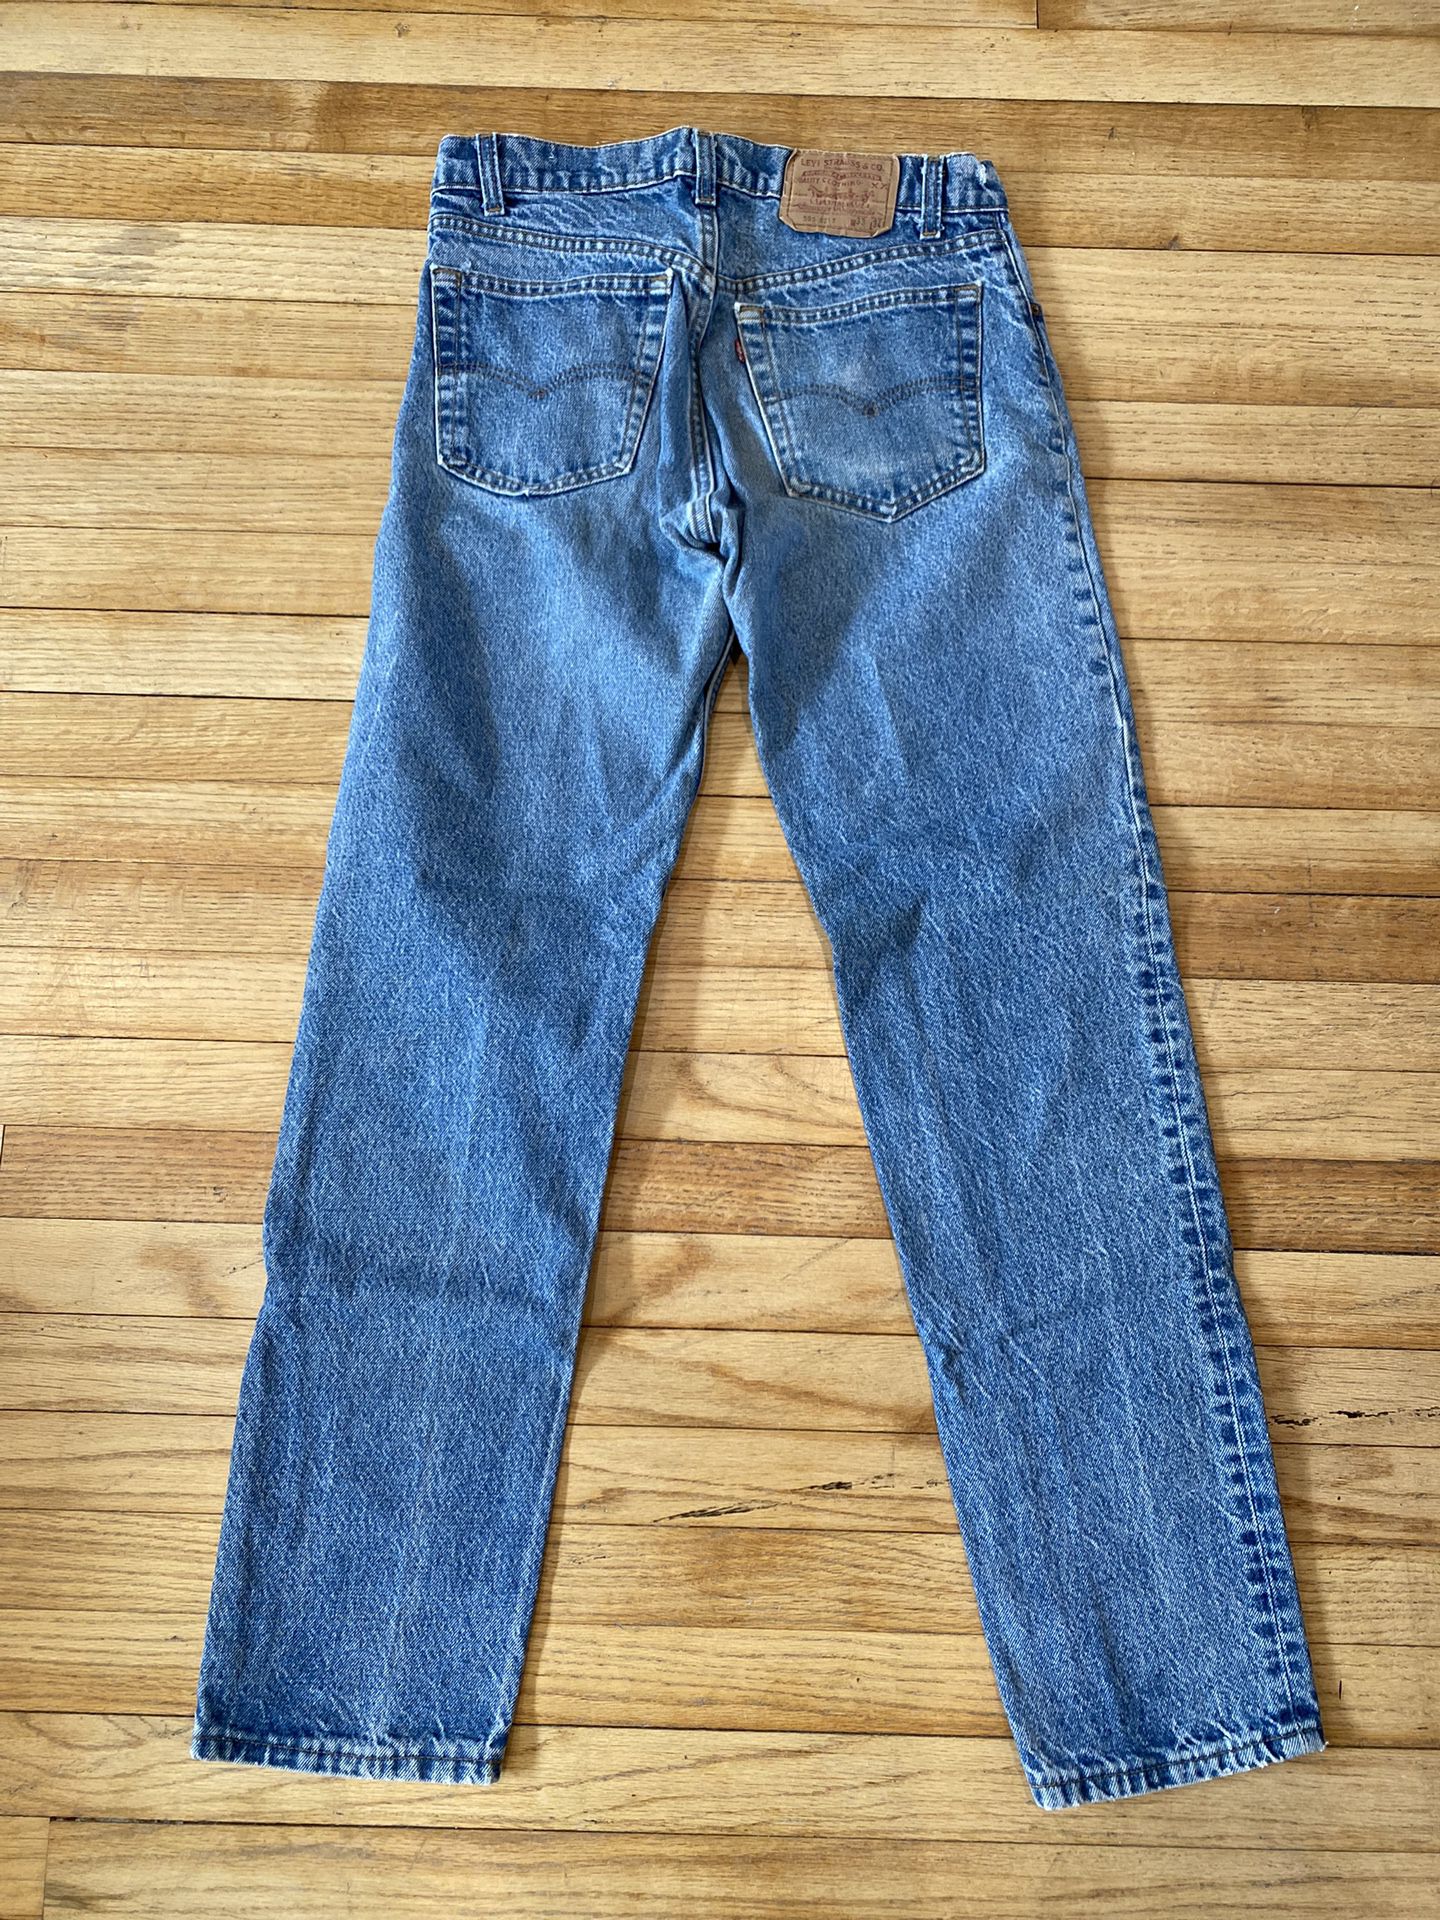 Men’s Levi’s 505 Jeans 90’s